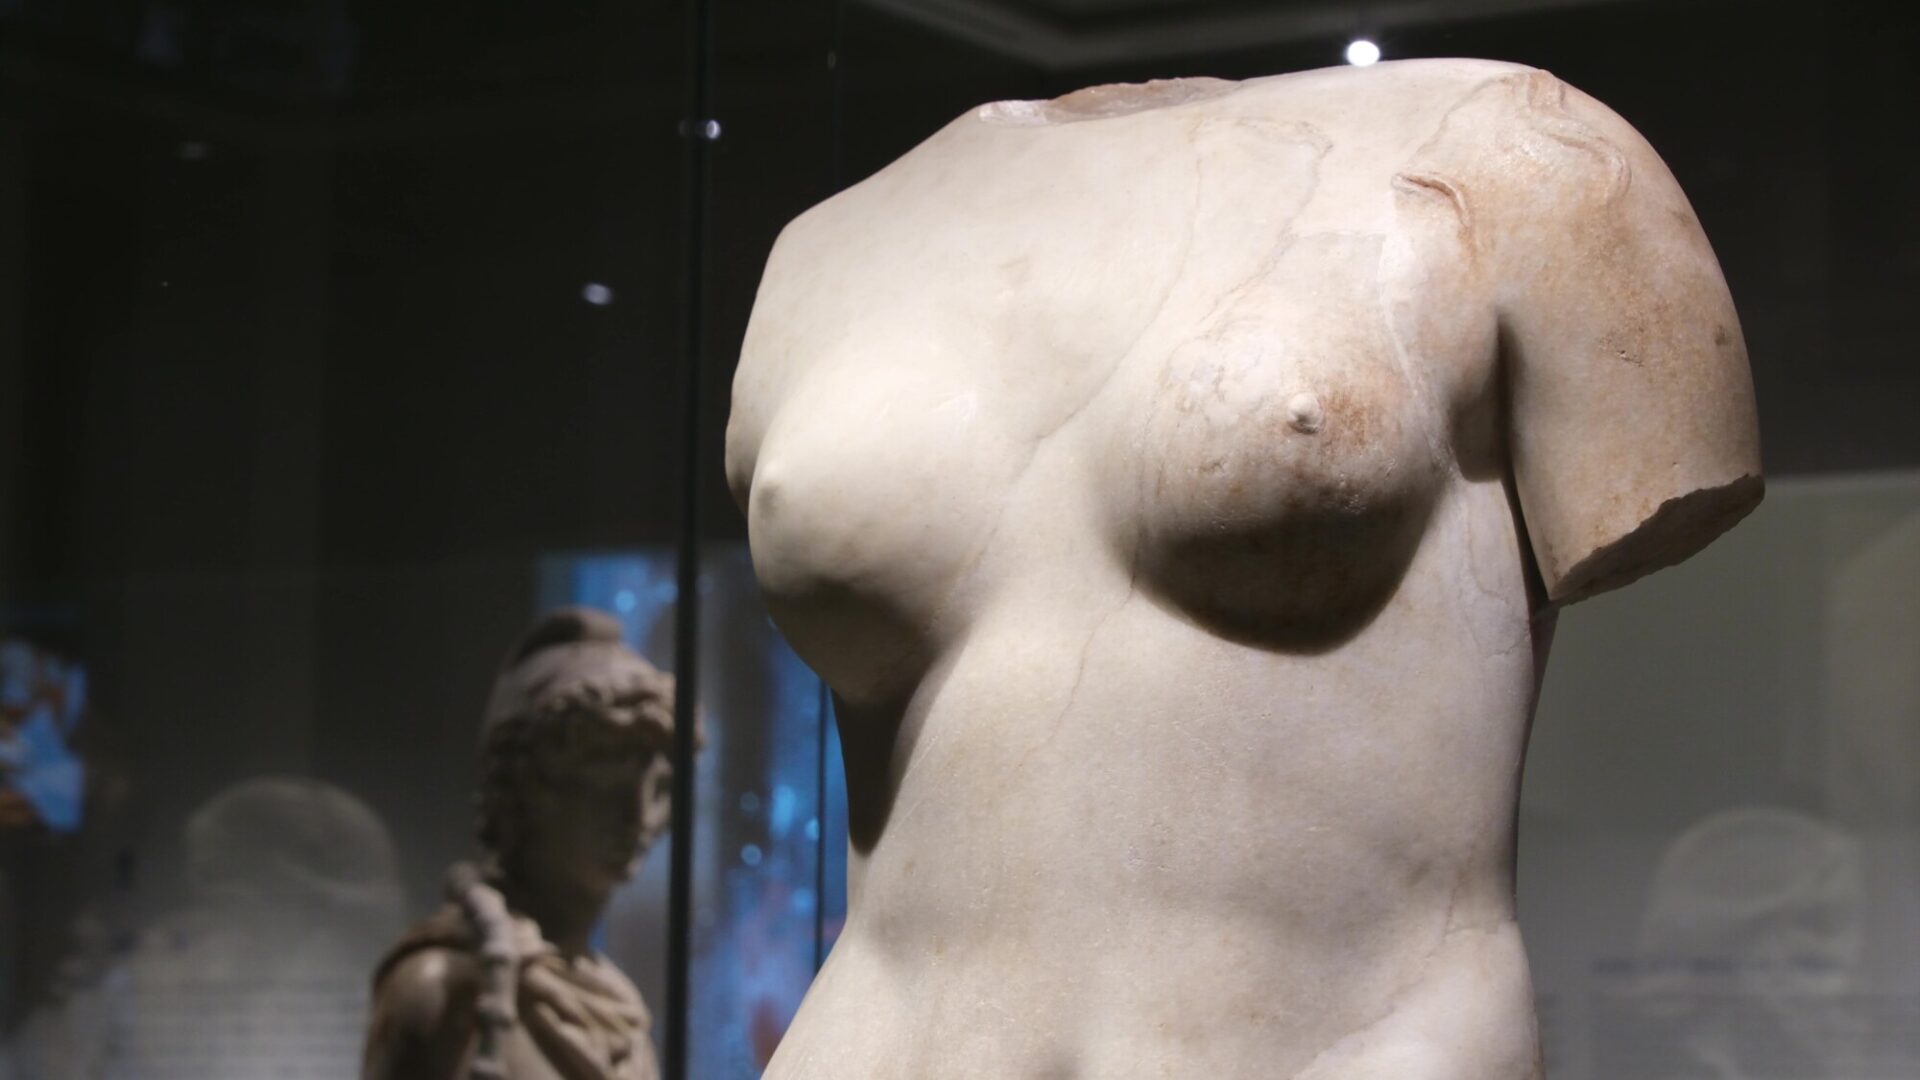 아름다운 것이 선한 것. 토르소만 남은 이 상은 사랑의 여신 베누스(Venus)가 욕조에서 나오는 순간을 나타낸 것이다. 인간 신체에 대한 숭배와 이상적인 아름다움은 고대 그리스 문화권에서 조각상을 만들 때 늘 중요한 주제였다. | 박재현/에포크타임스